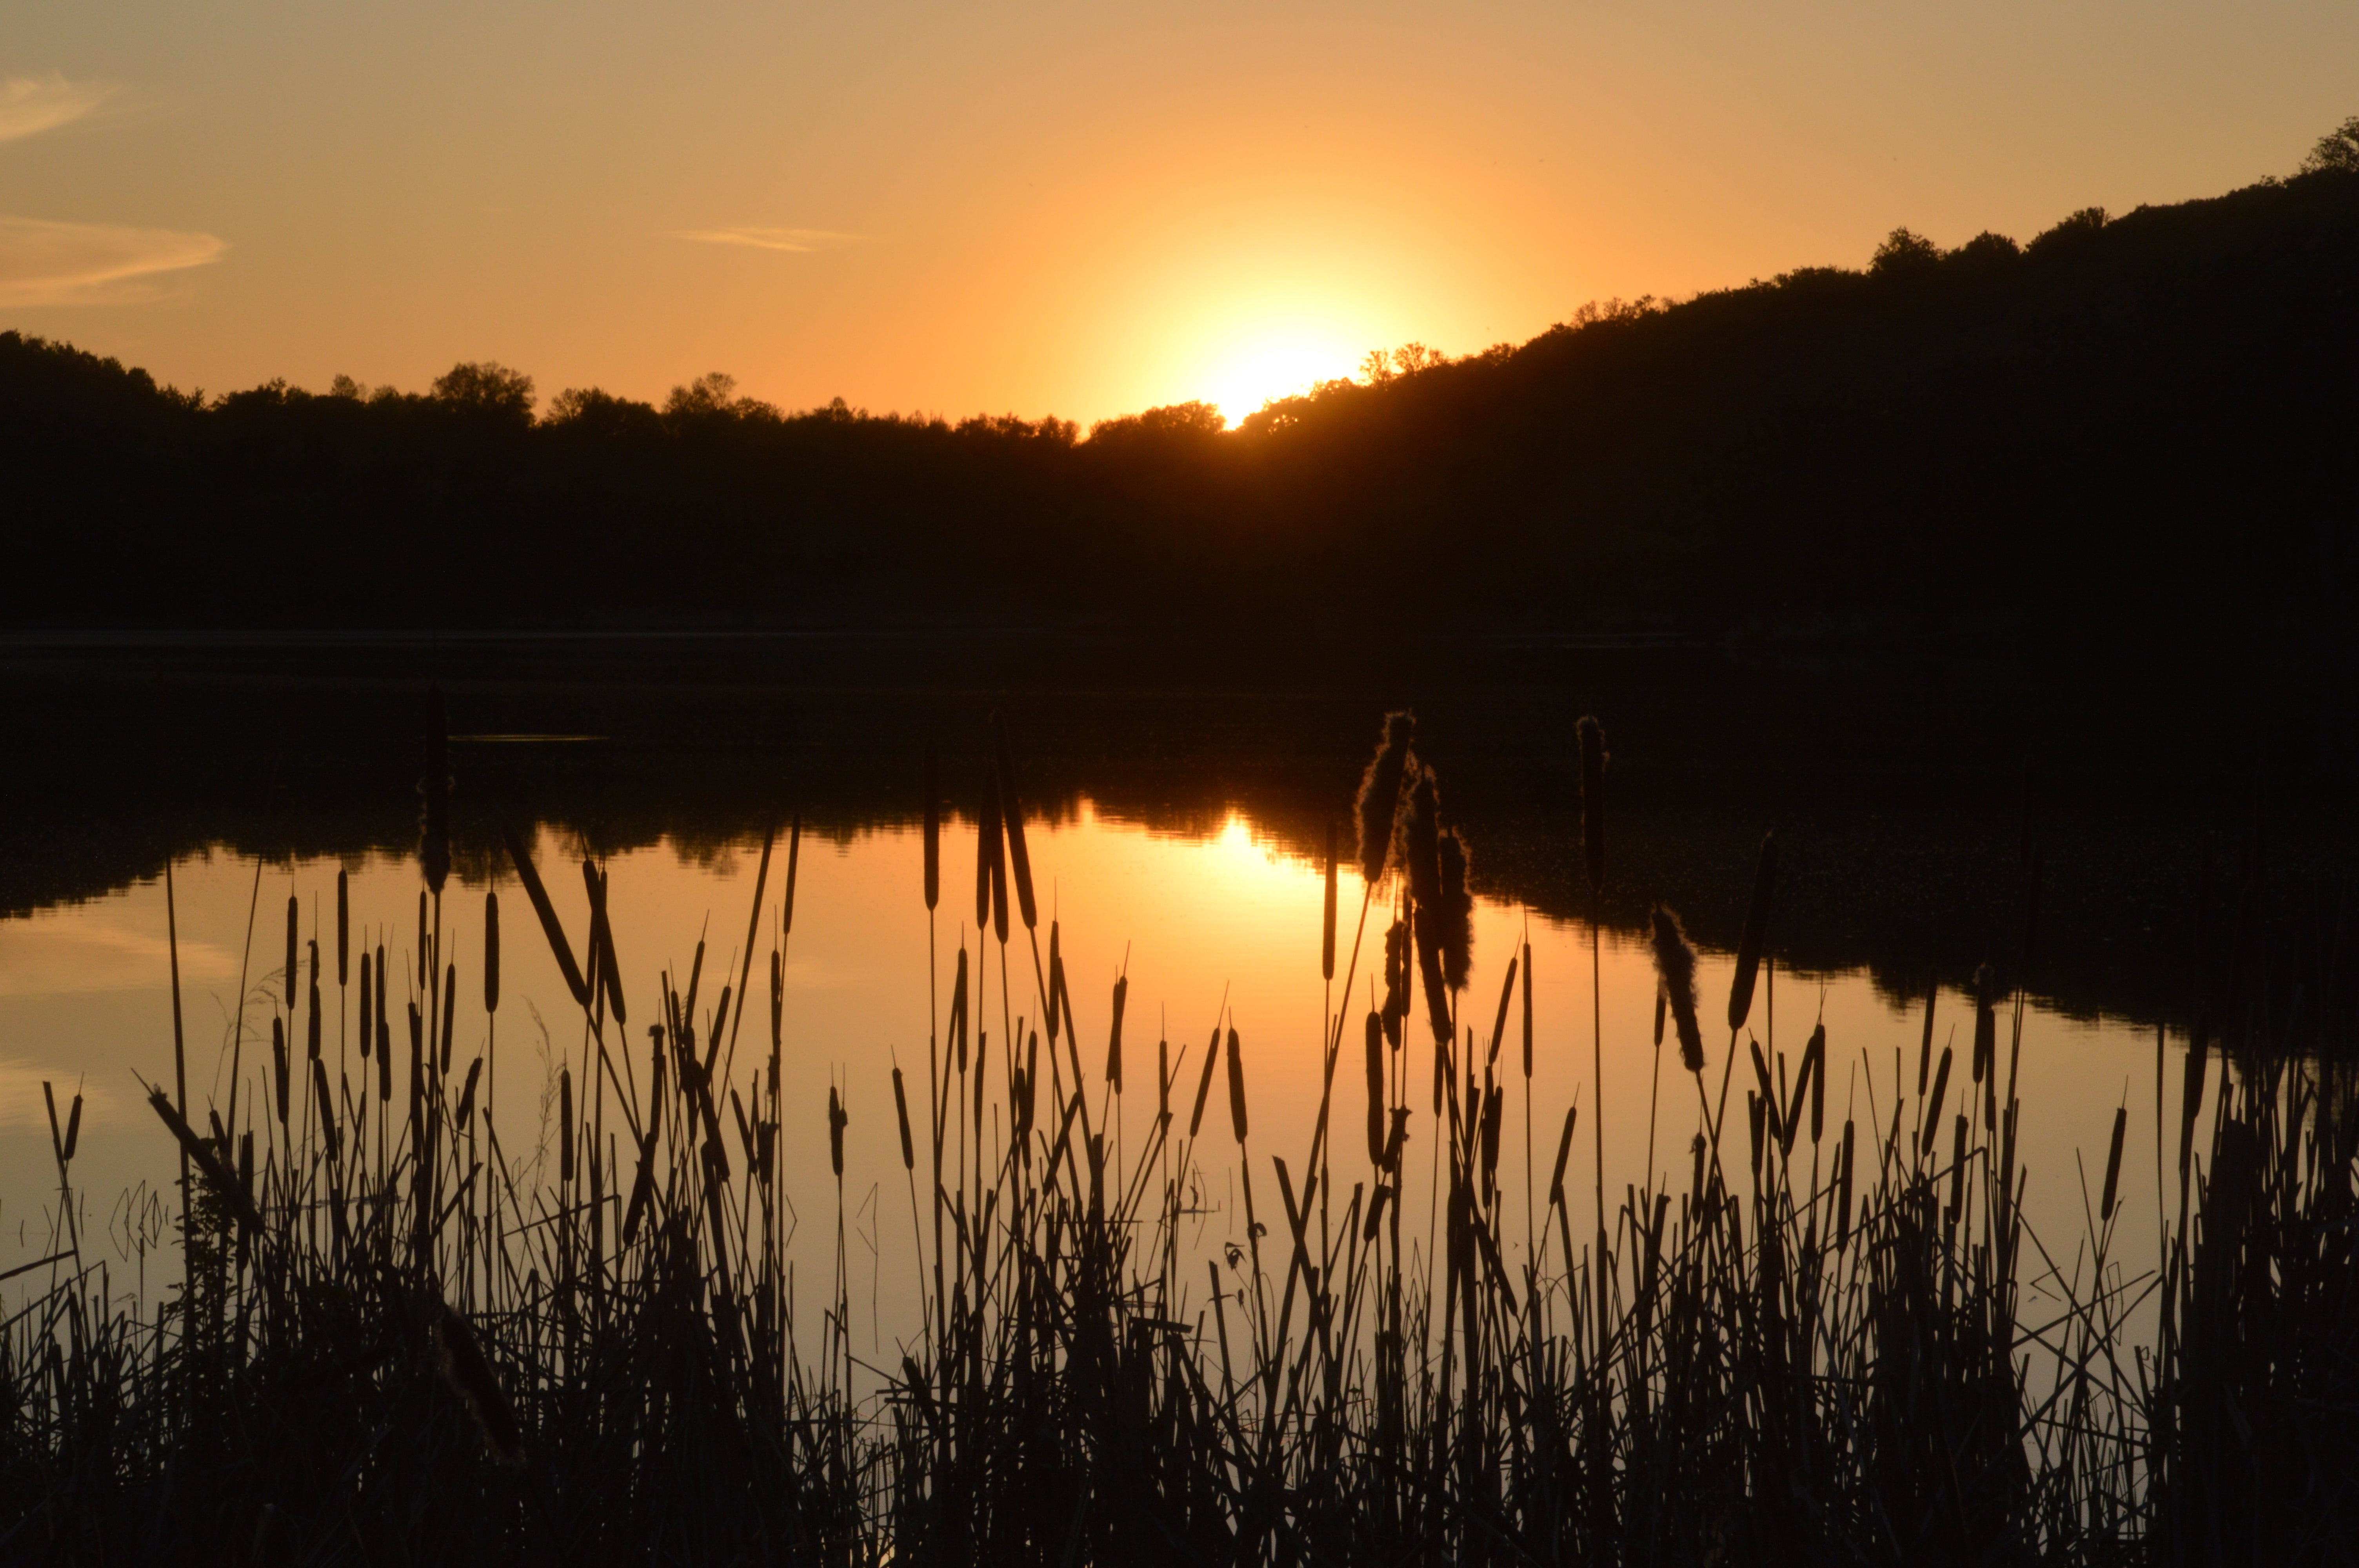 Gorgeous sunset along Grass Lake